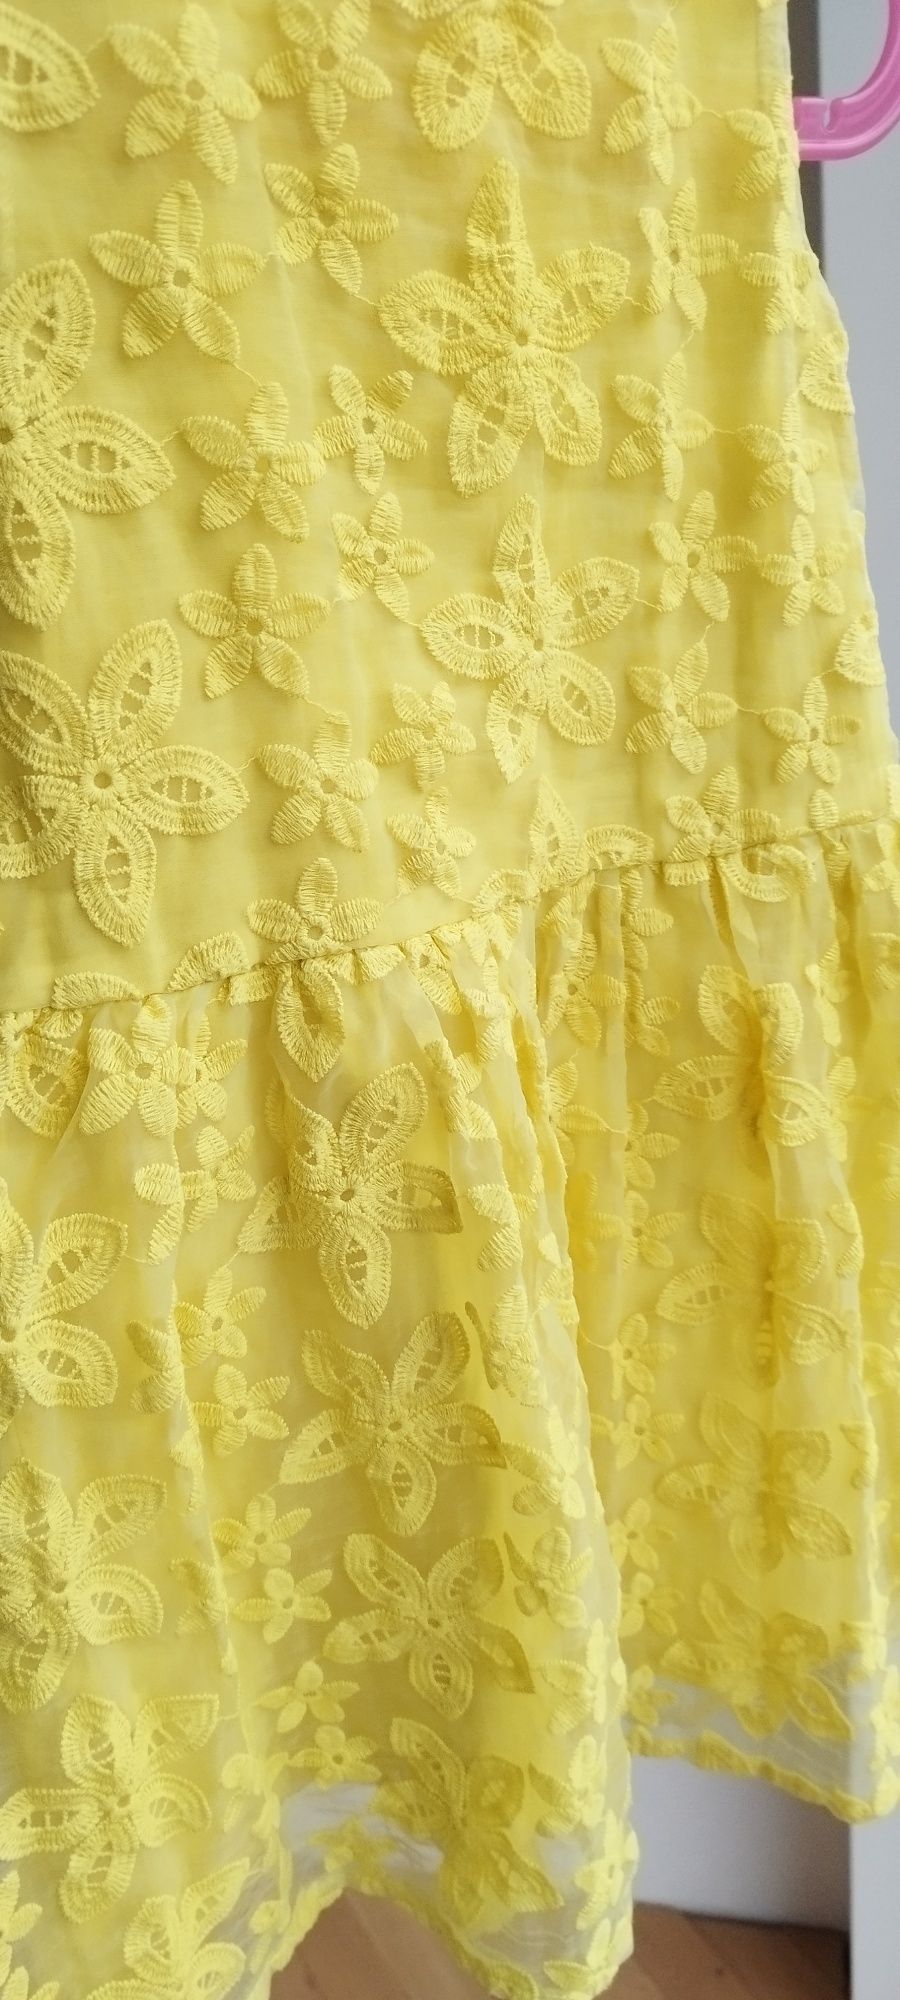 Sukienka koronkowa w kwiaty żółta wizytowa galowa lato 116 next